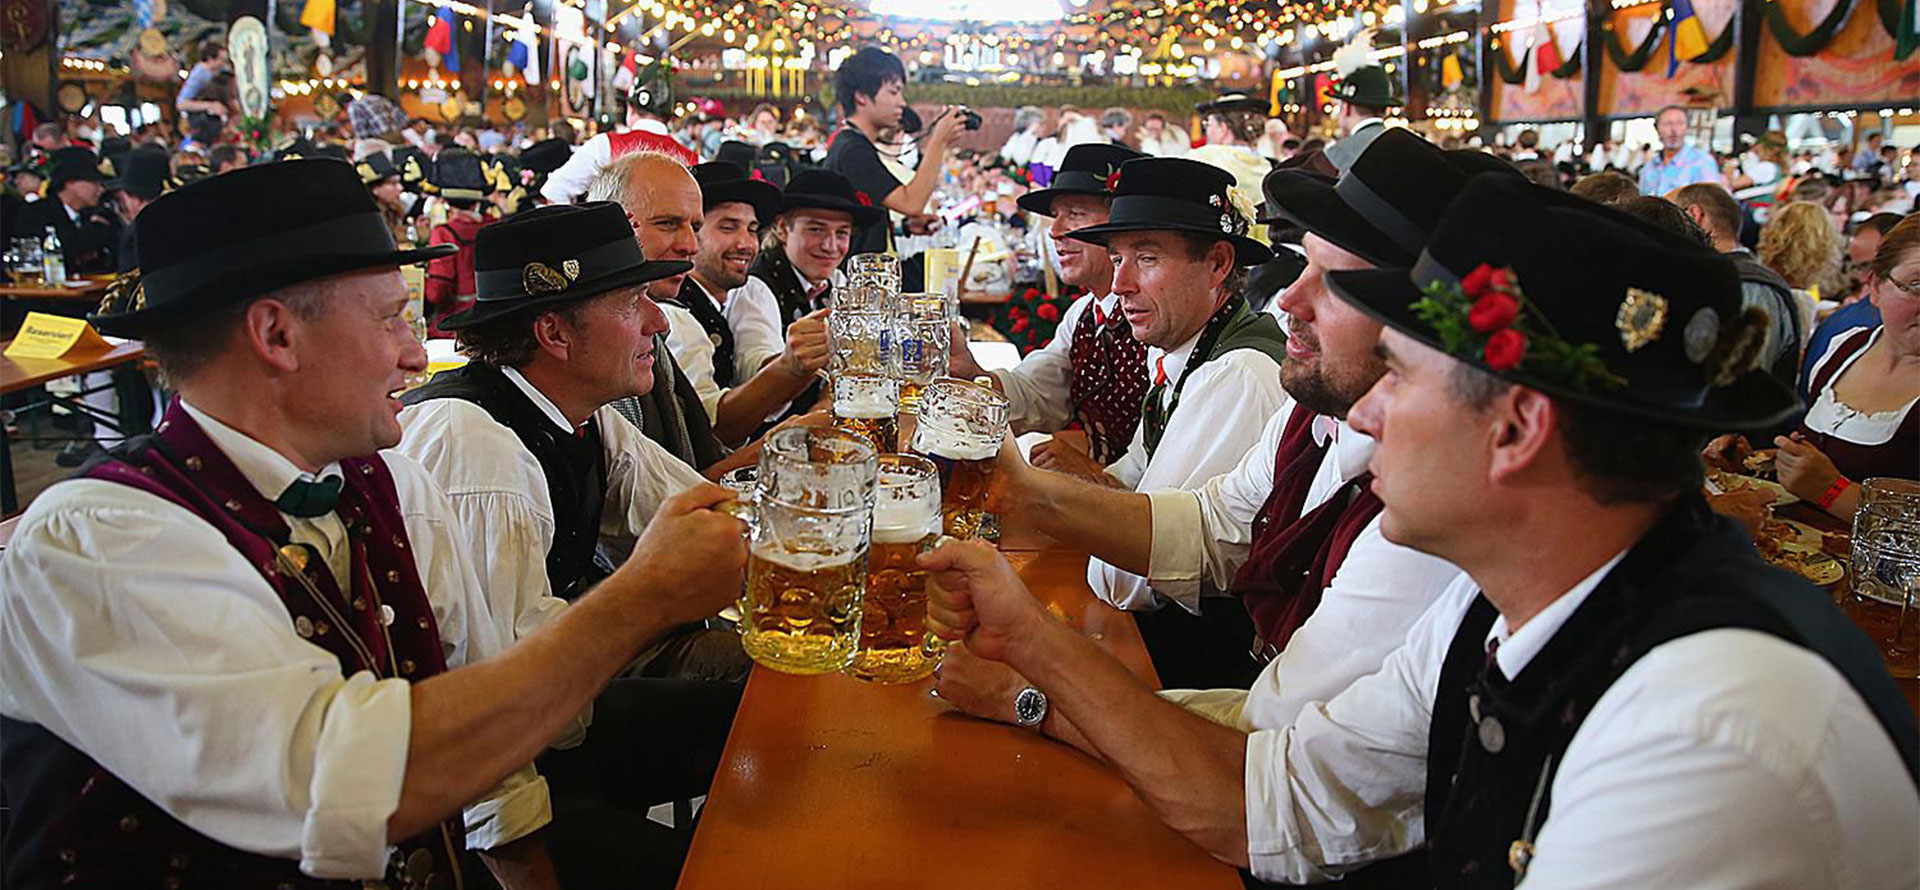 Oktoberfest in Germany.